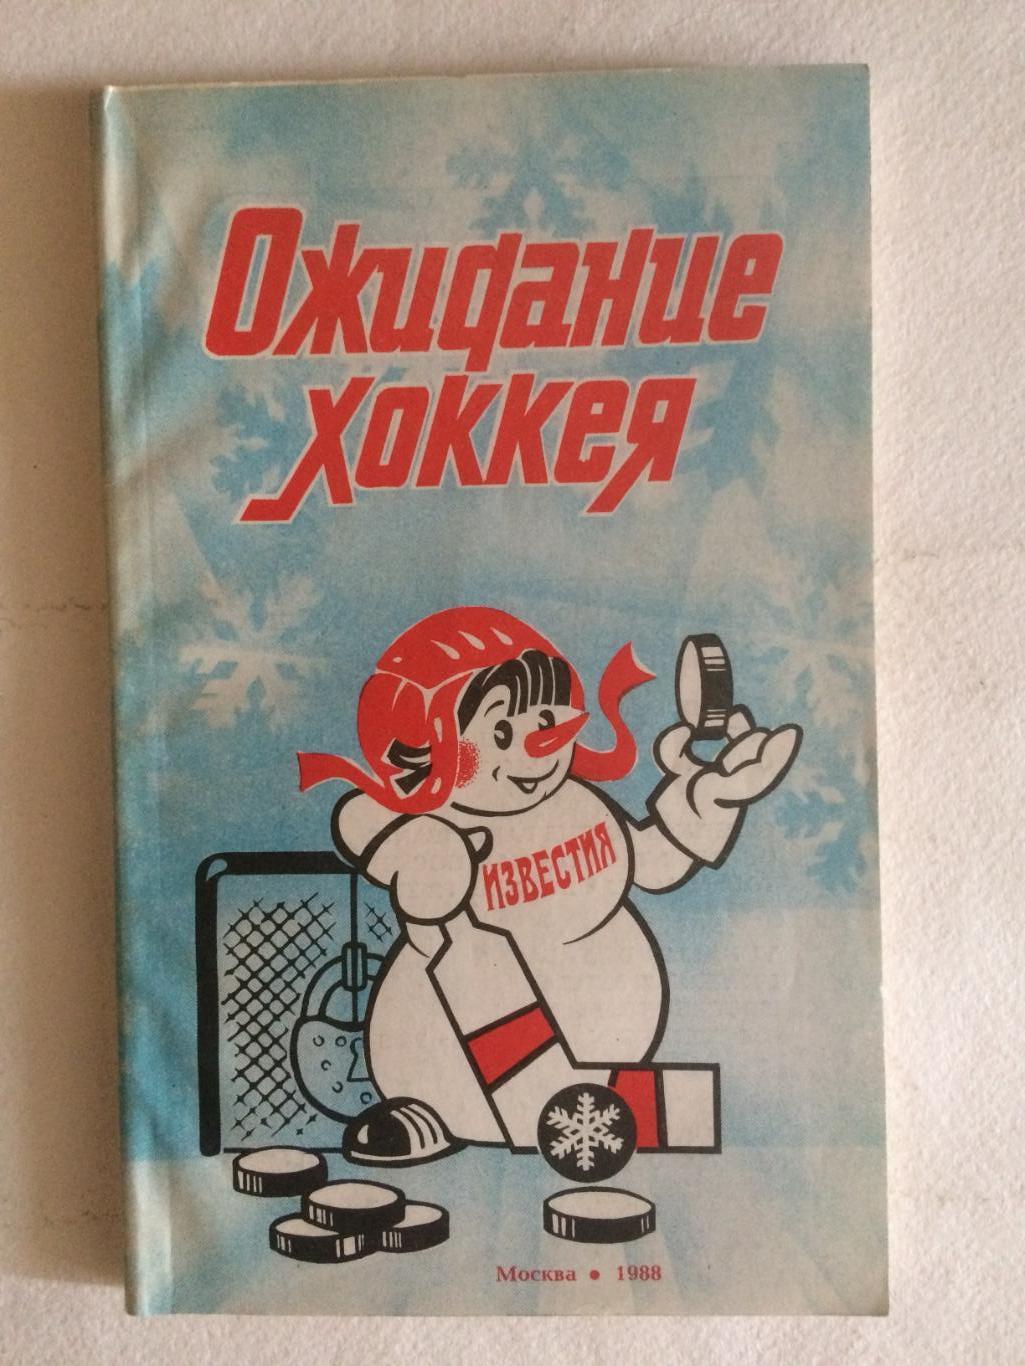 Хоккей Приз Известий 1988 Снеговик: Ожидание Хоккея